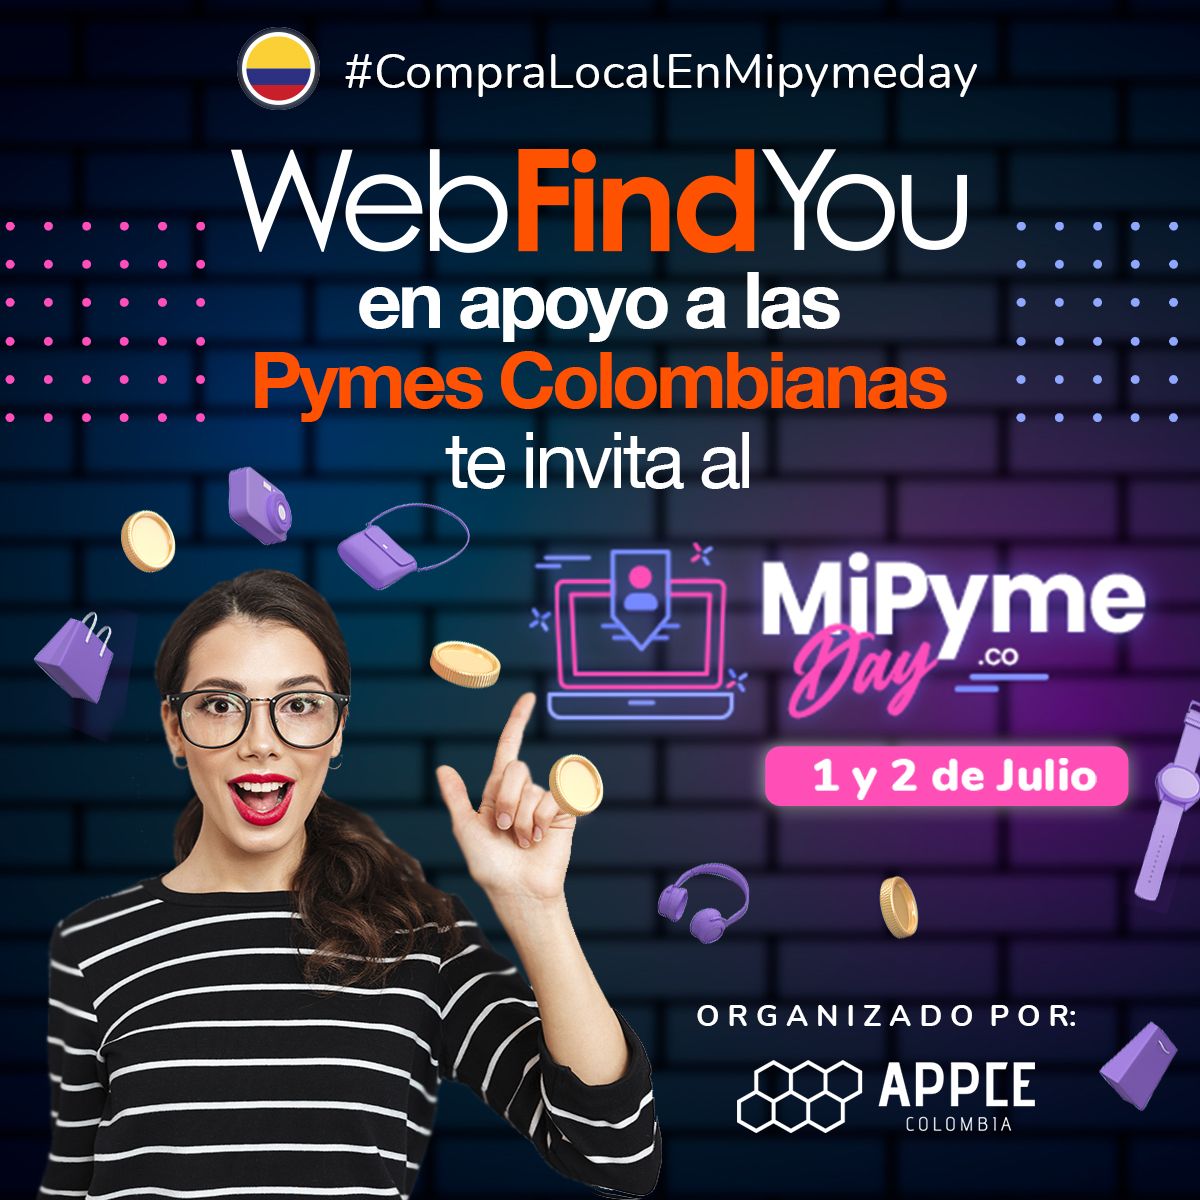 WebfindYou en apoyo a las Pymes Colombianas los invita al MipymeDay